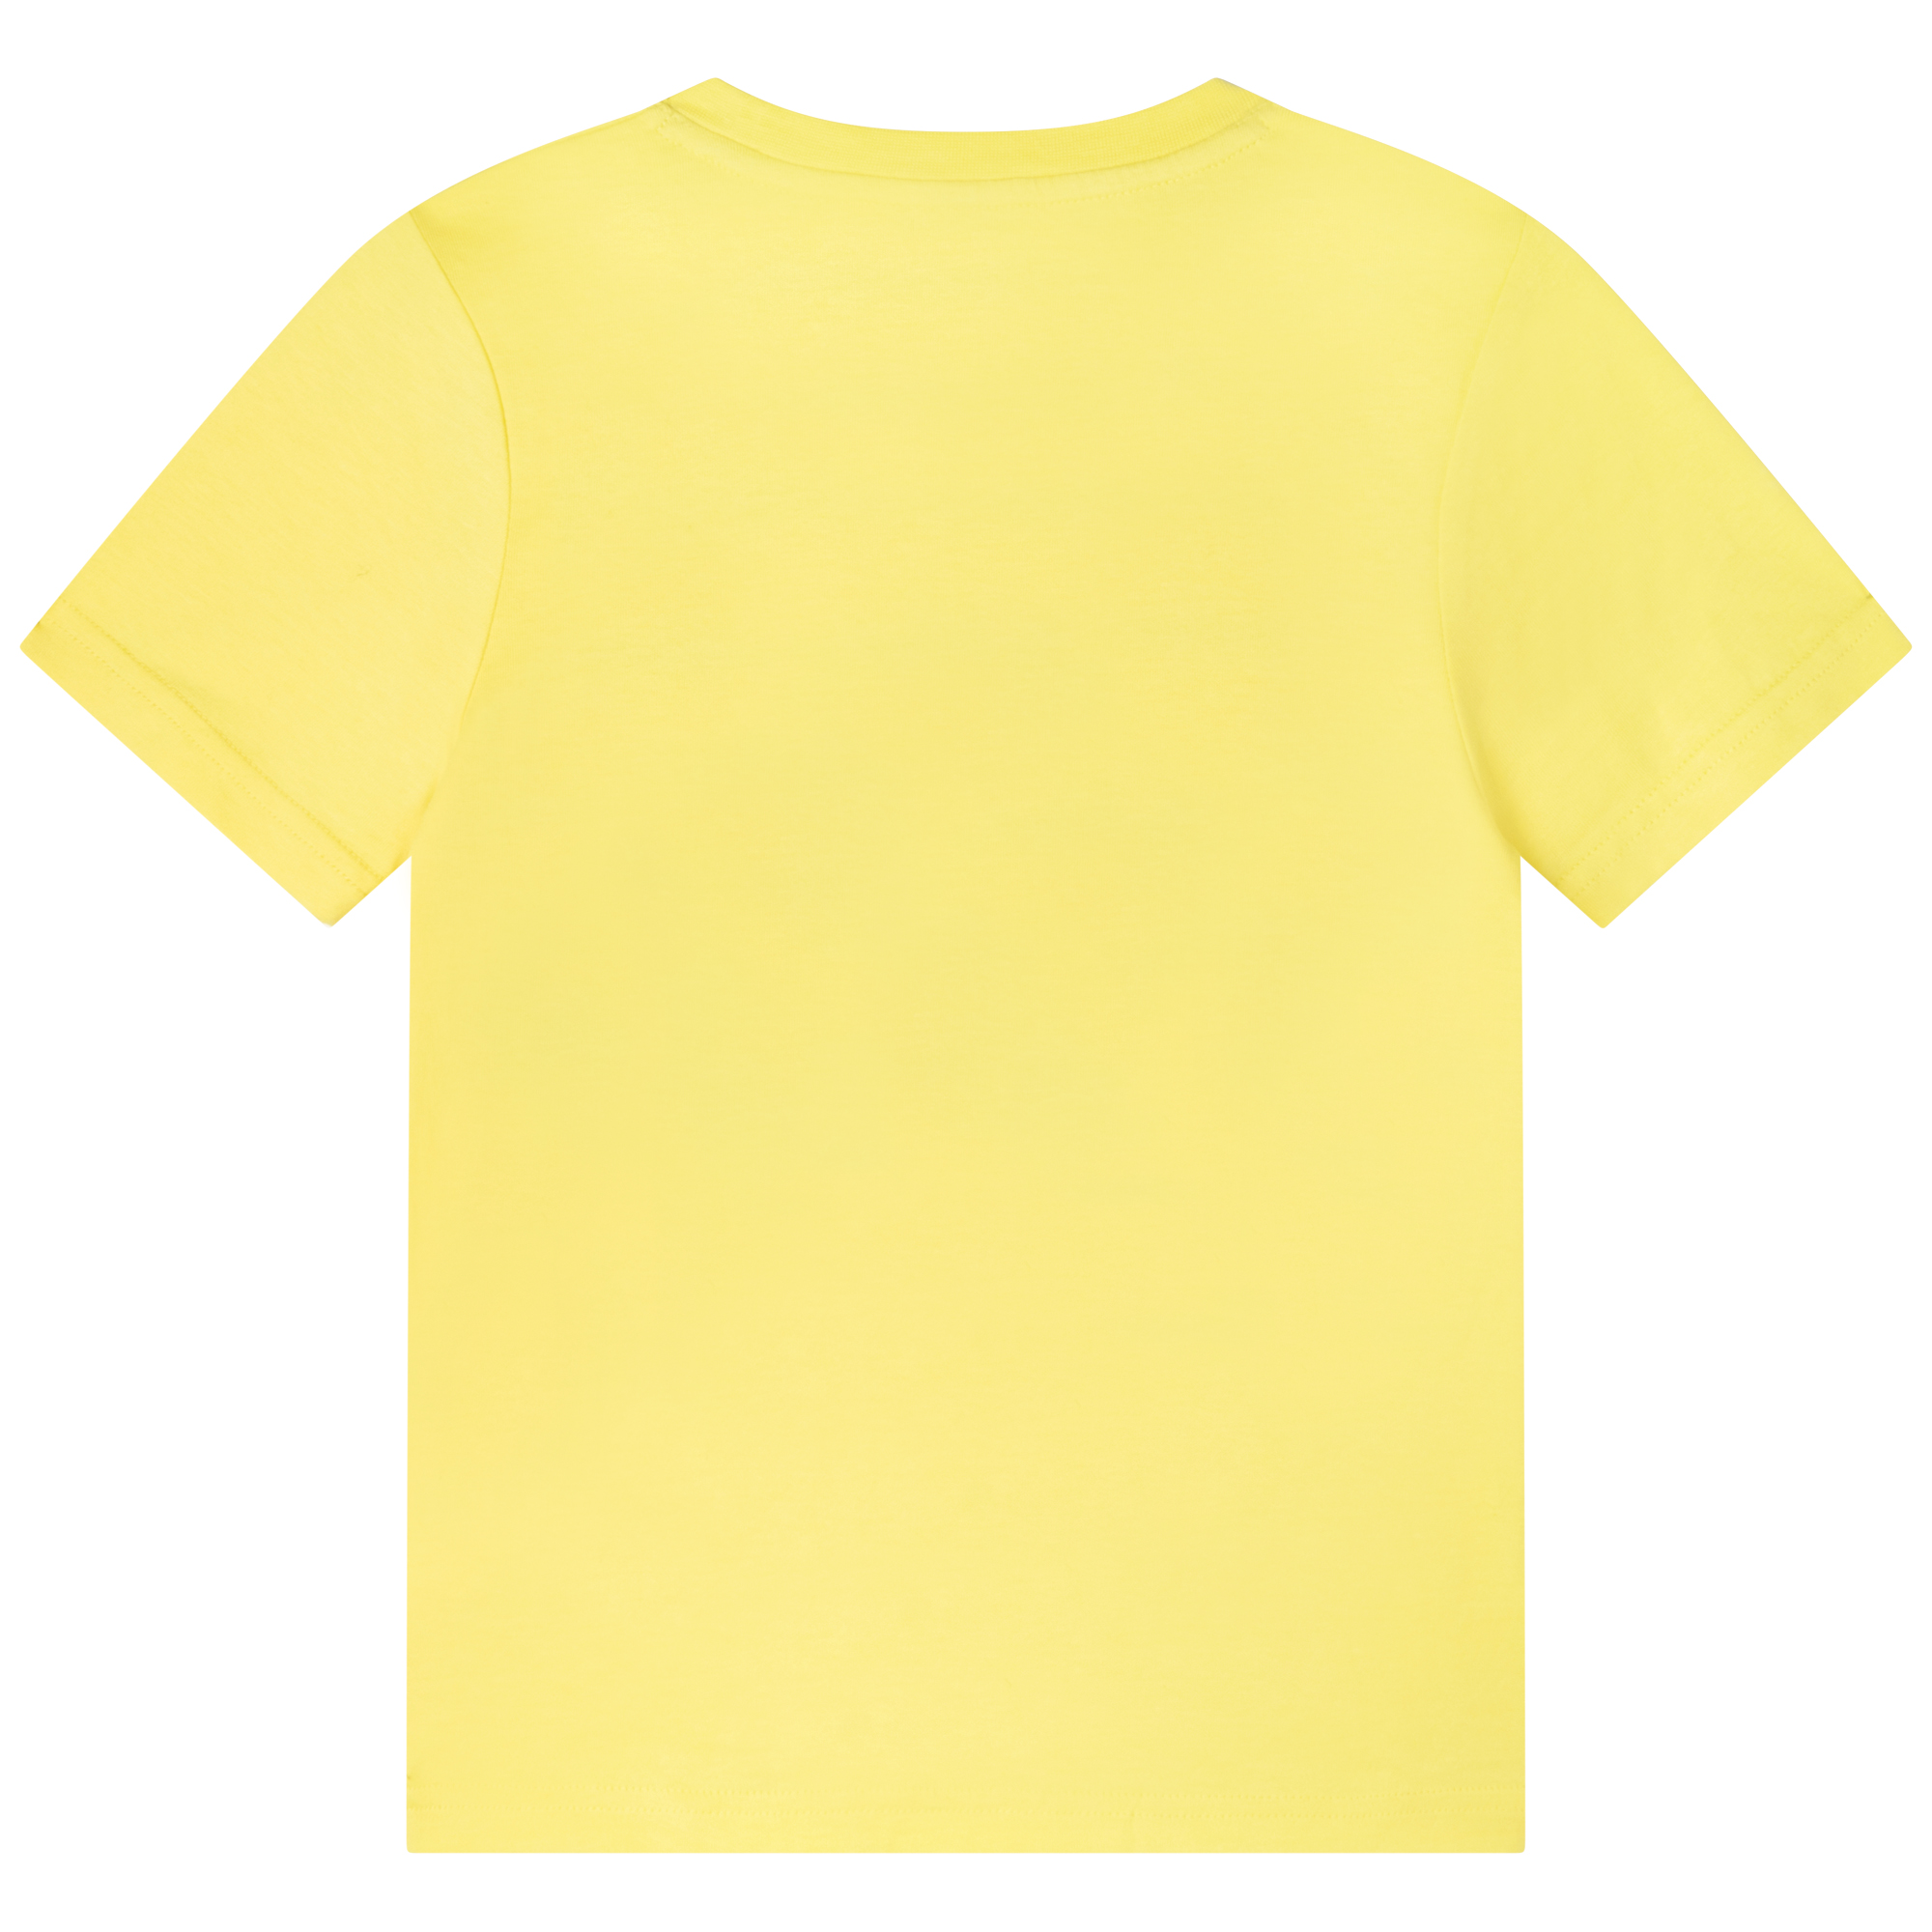 Kurzarm-T-Shirt TIMBERLAND Für JUNGE